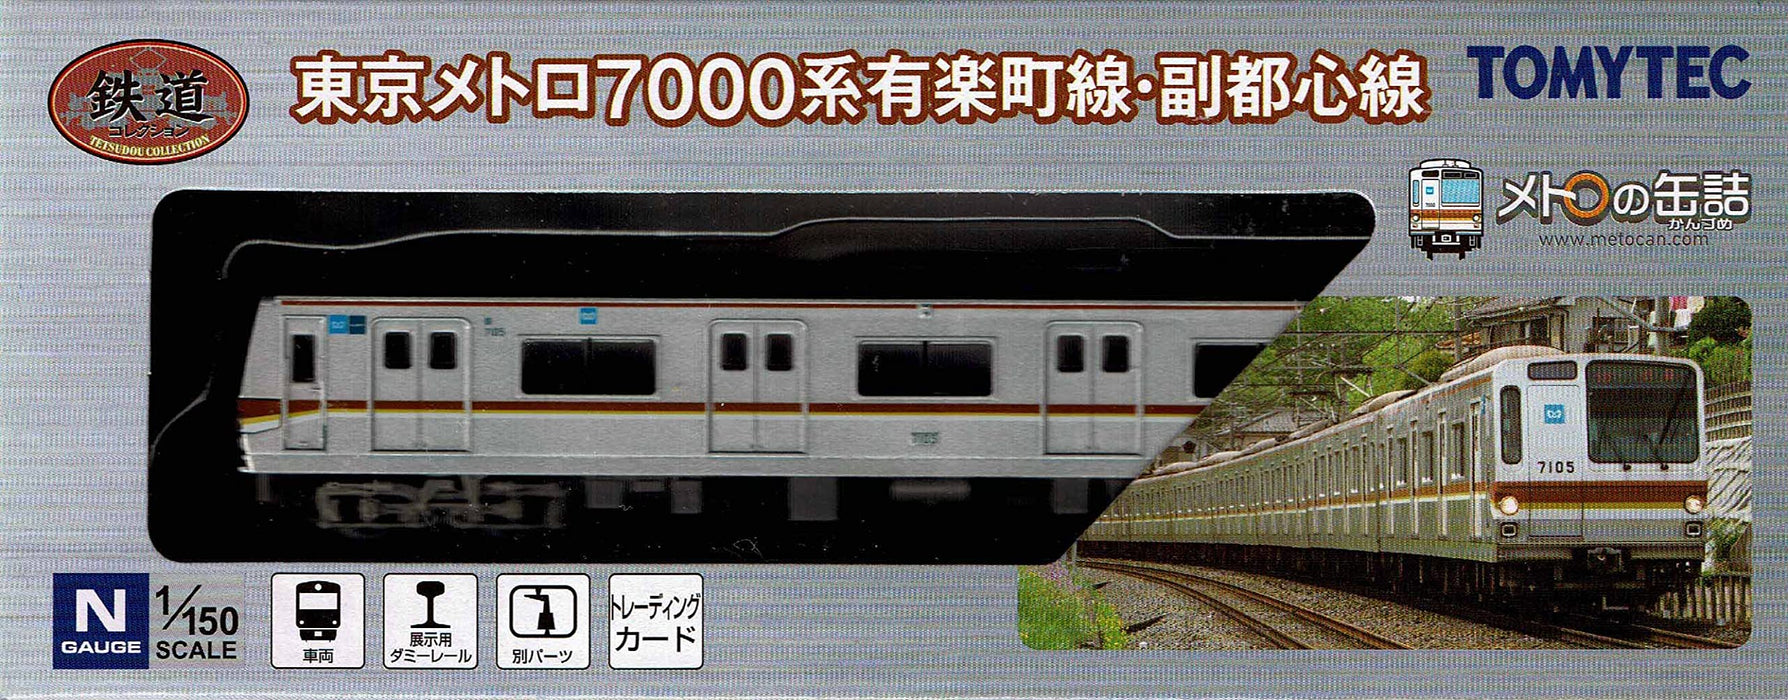 Tomytec Tokyo Metro 7000 Series Yurakucho & Fukutoshin Line Railway Collection